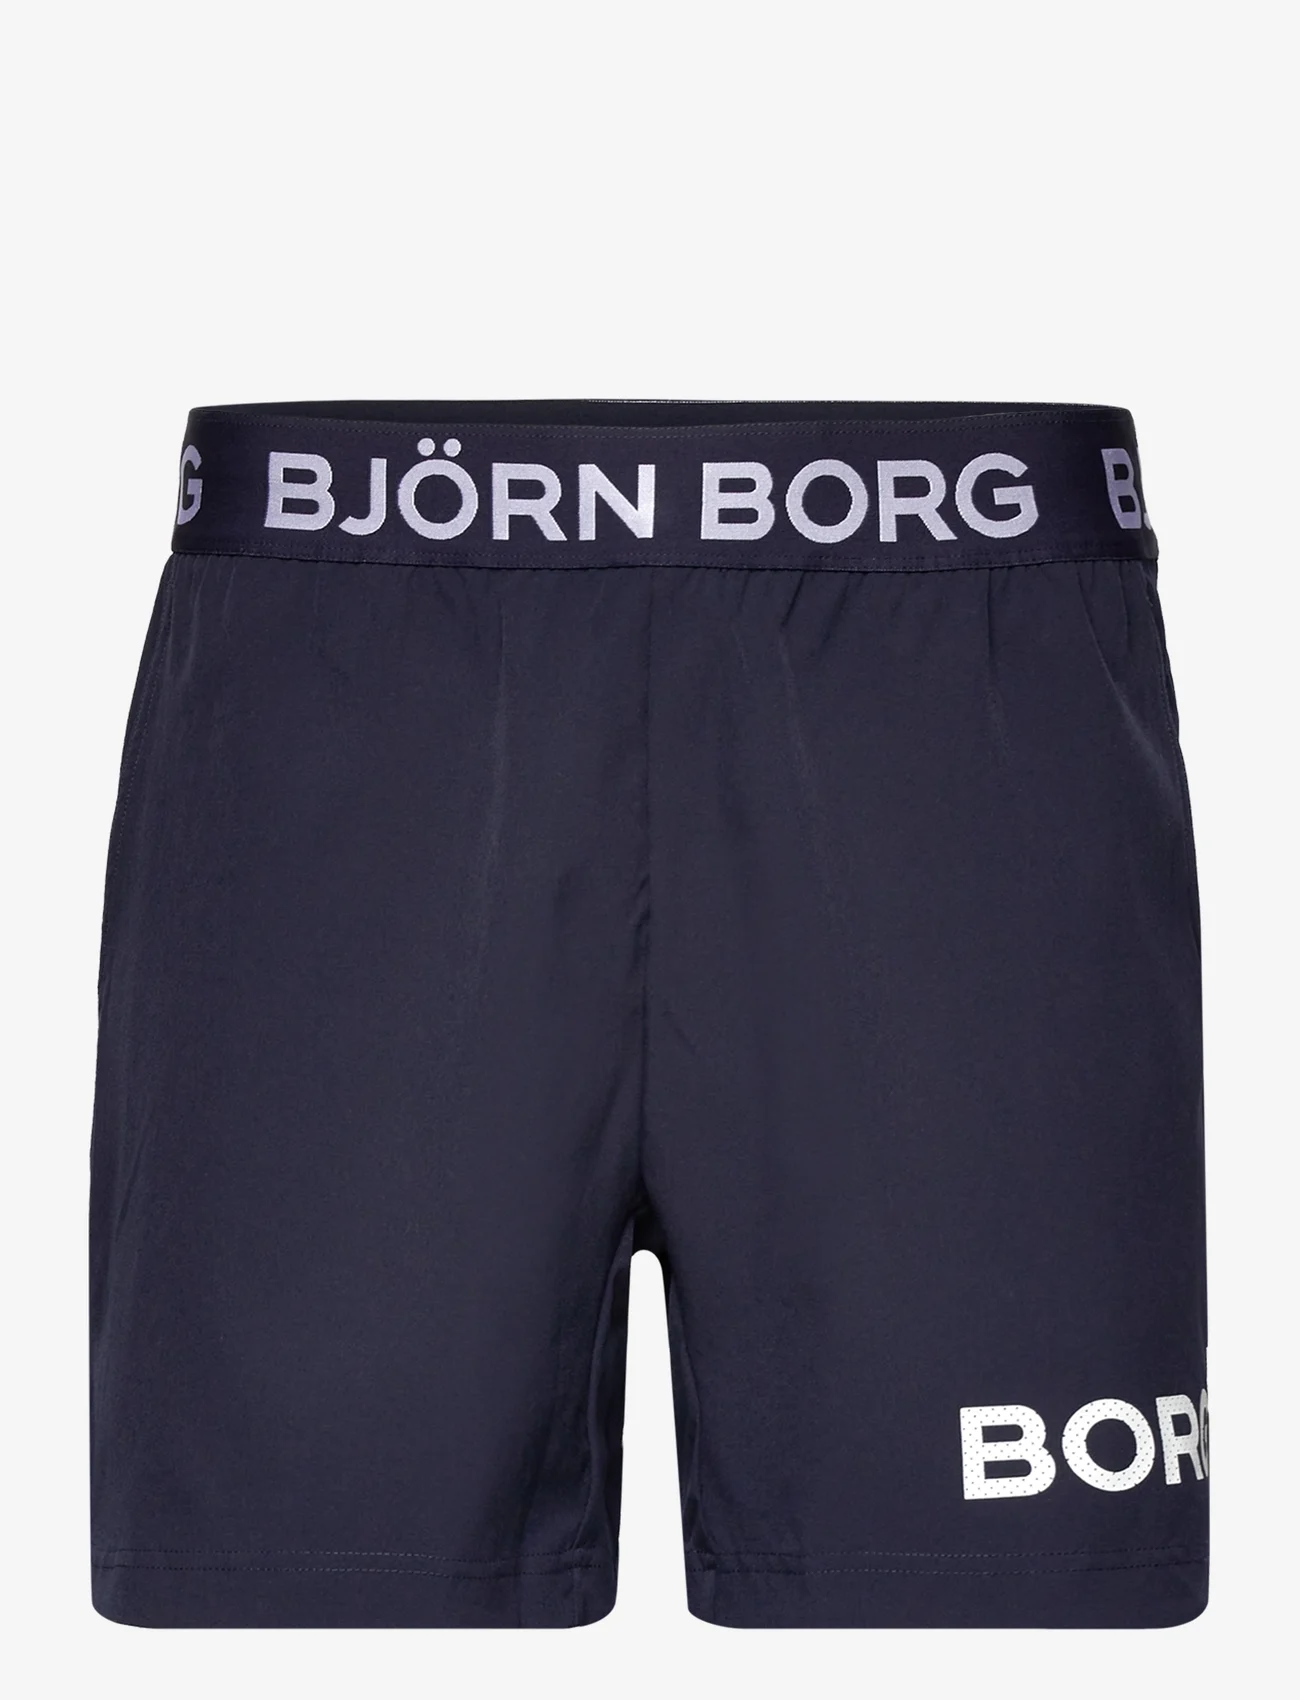 Björn Borg - BORG SHORT SHORTS - träningsshorts - night sky - 0